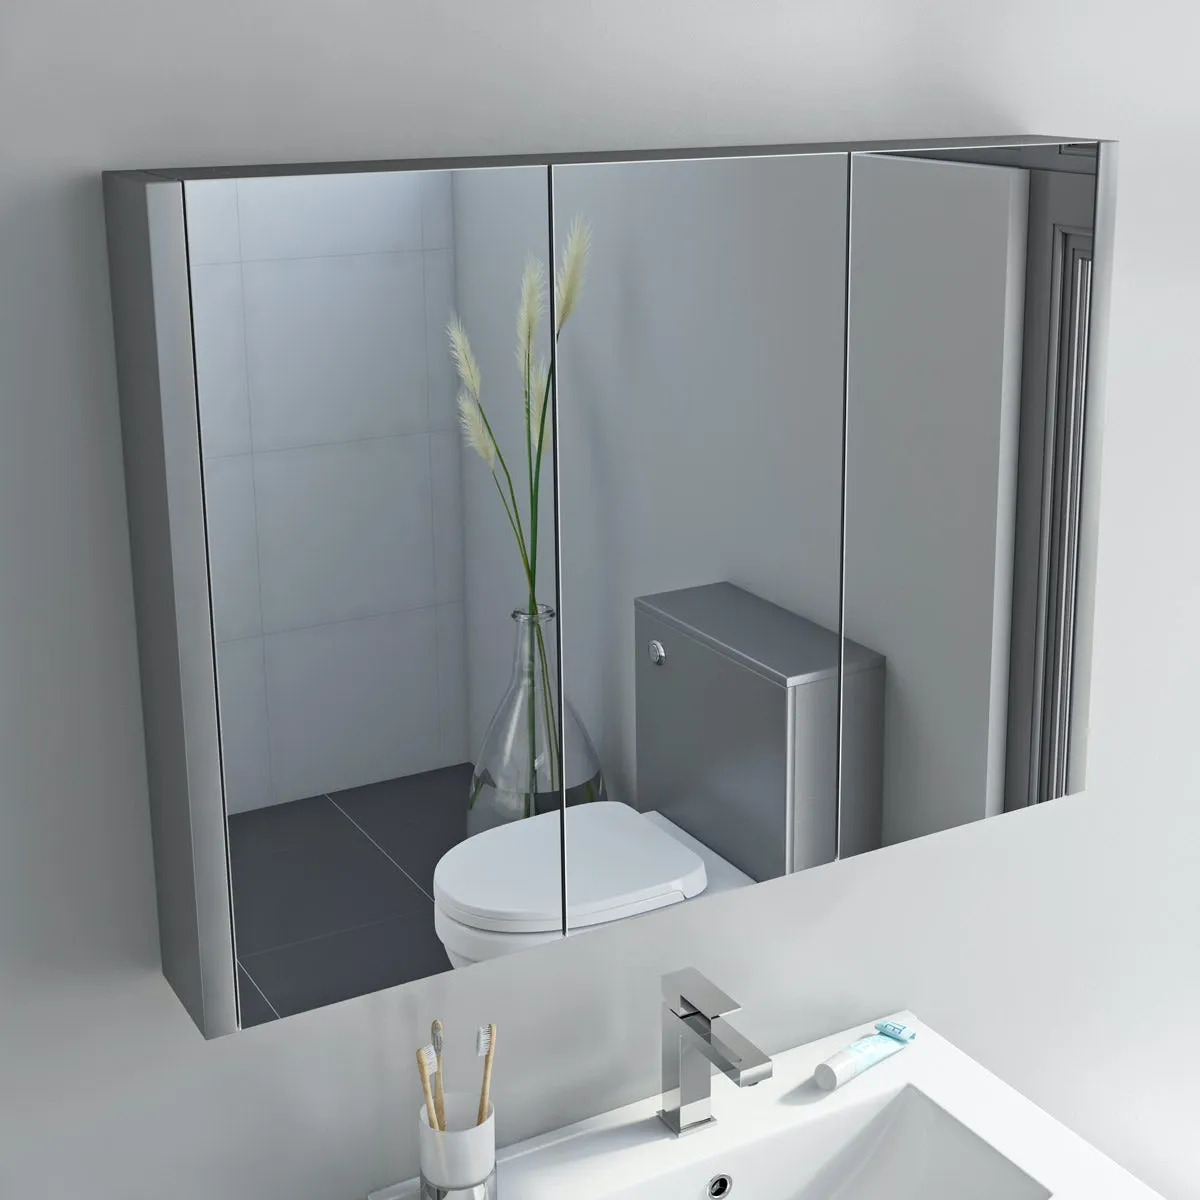 Orchard Derwent stone grey mirror cabinet 650 x 900mm